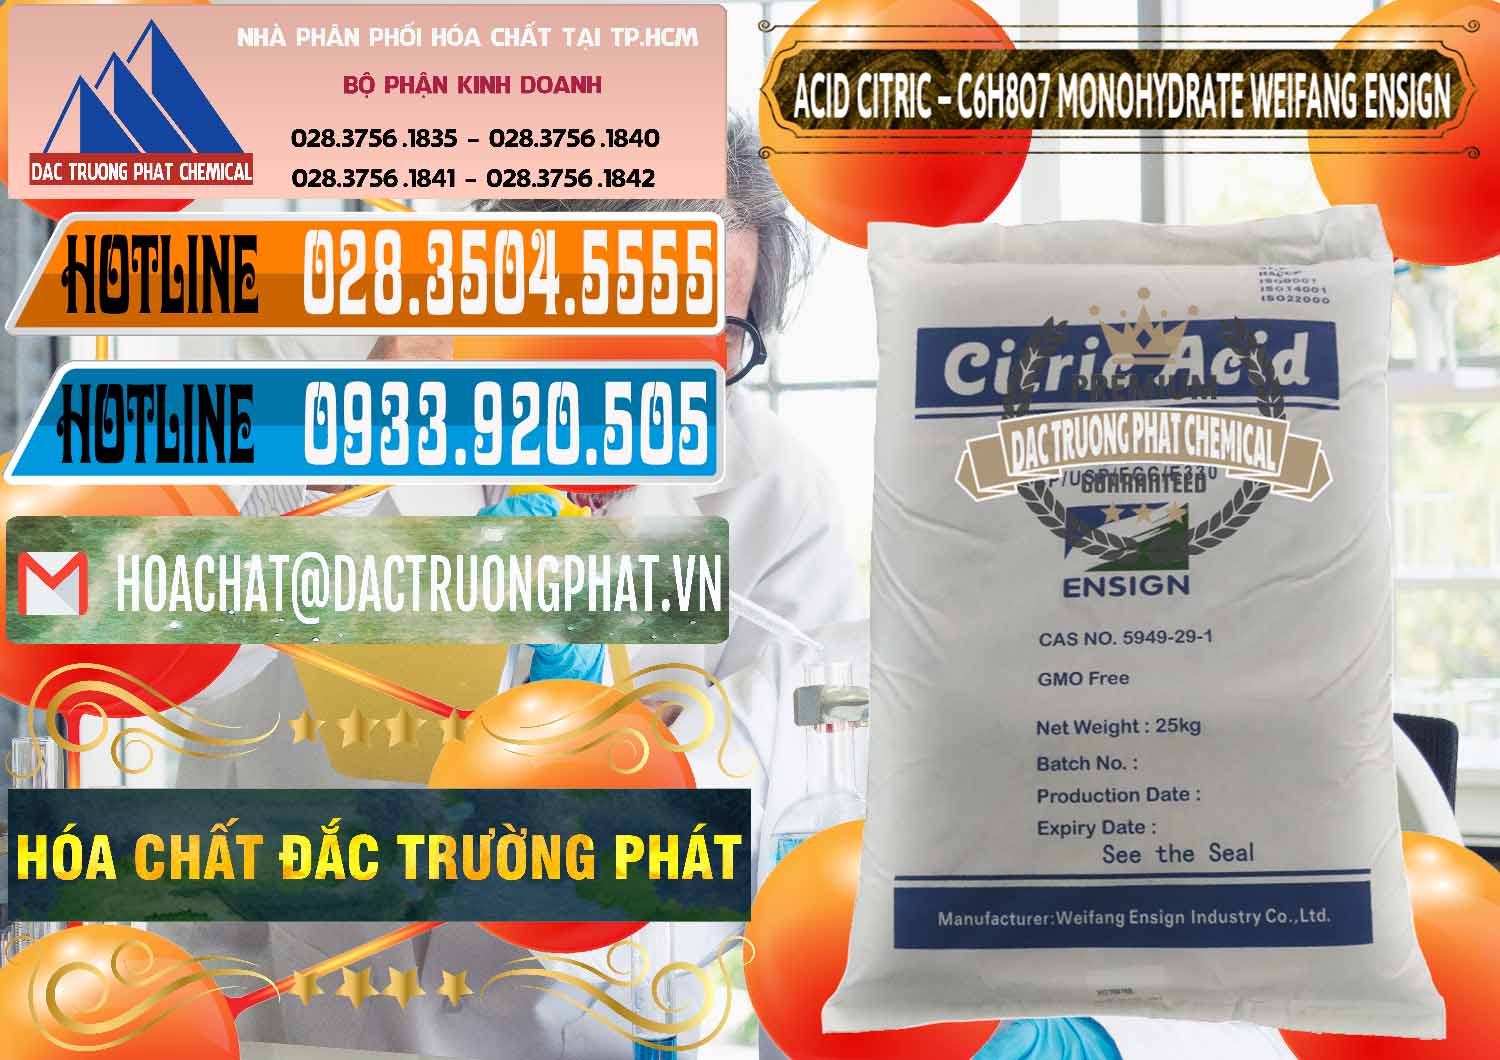 Đơn vị chuyên cung cấp - bán Acid Citric - Axit Citric Monohydrate Weifang Trung Quốc China - 0009 - Công ty chuyên cung ứng & phân phối hóa chất tại TP.HCM - stmp.net